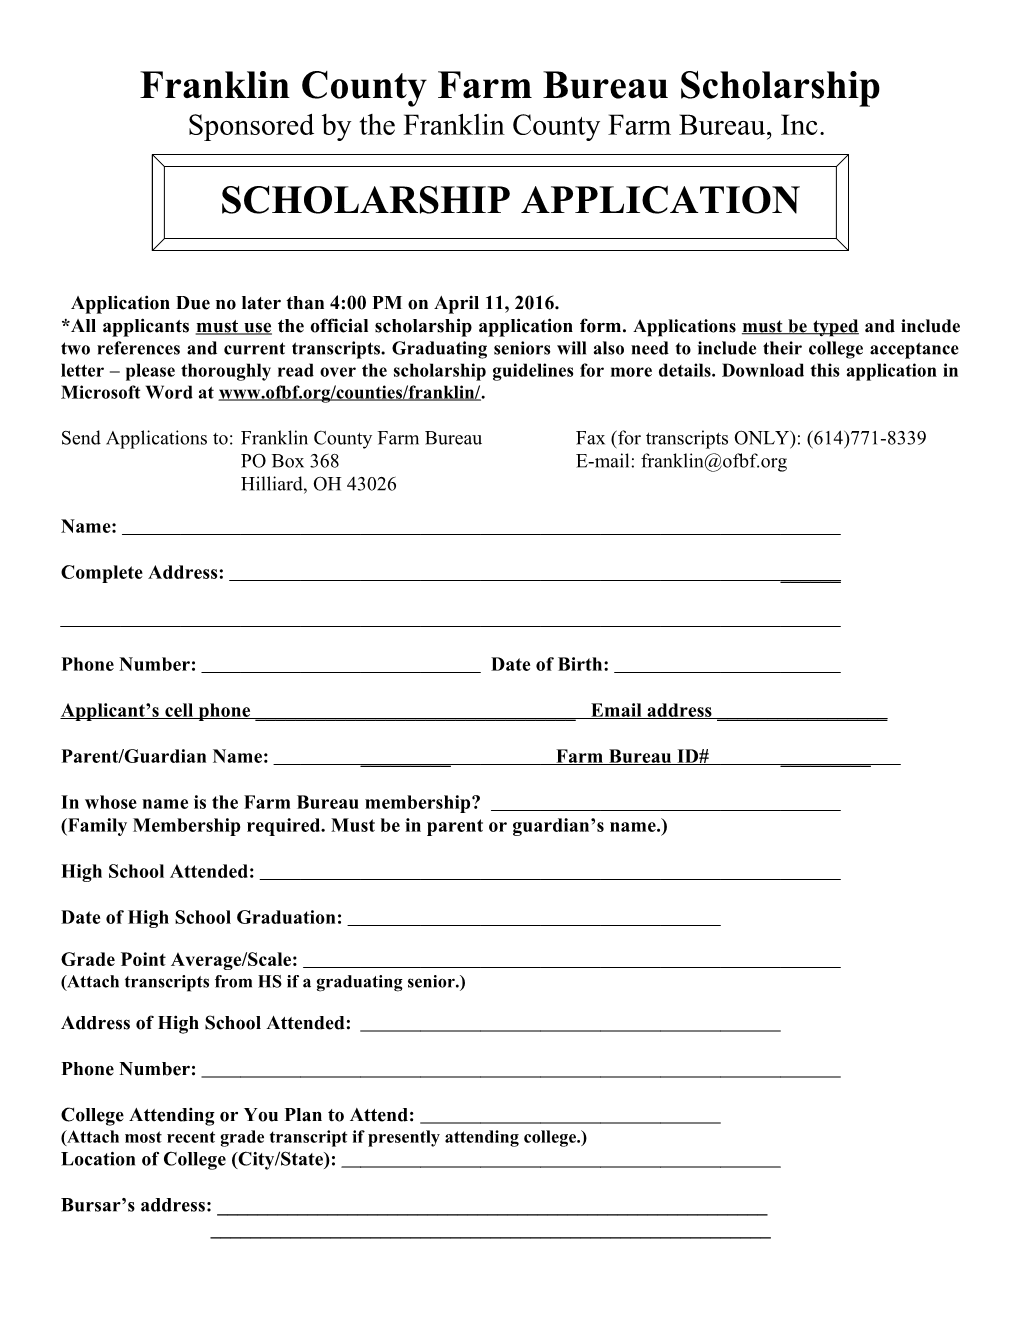 Franklin County Farm Bureau Scholarship